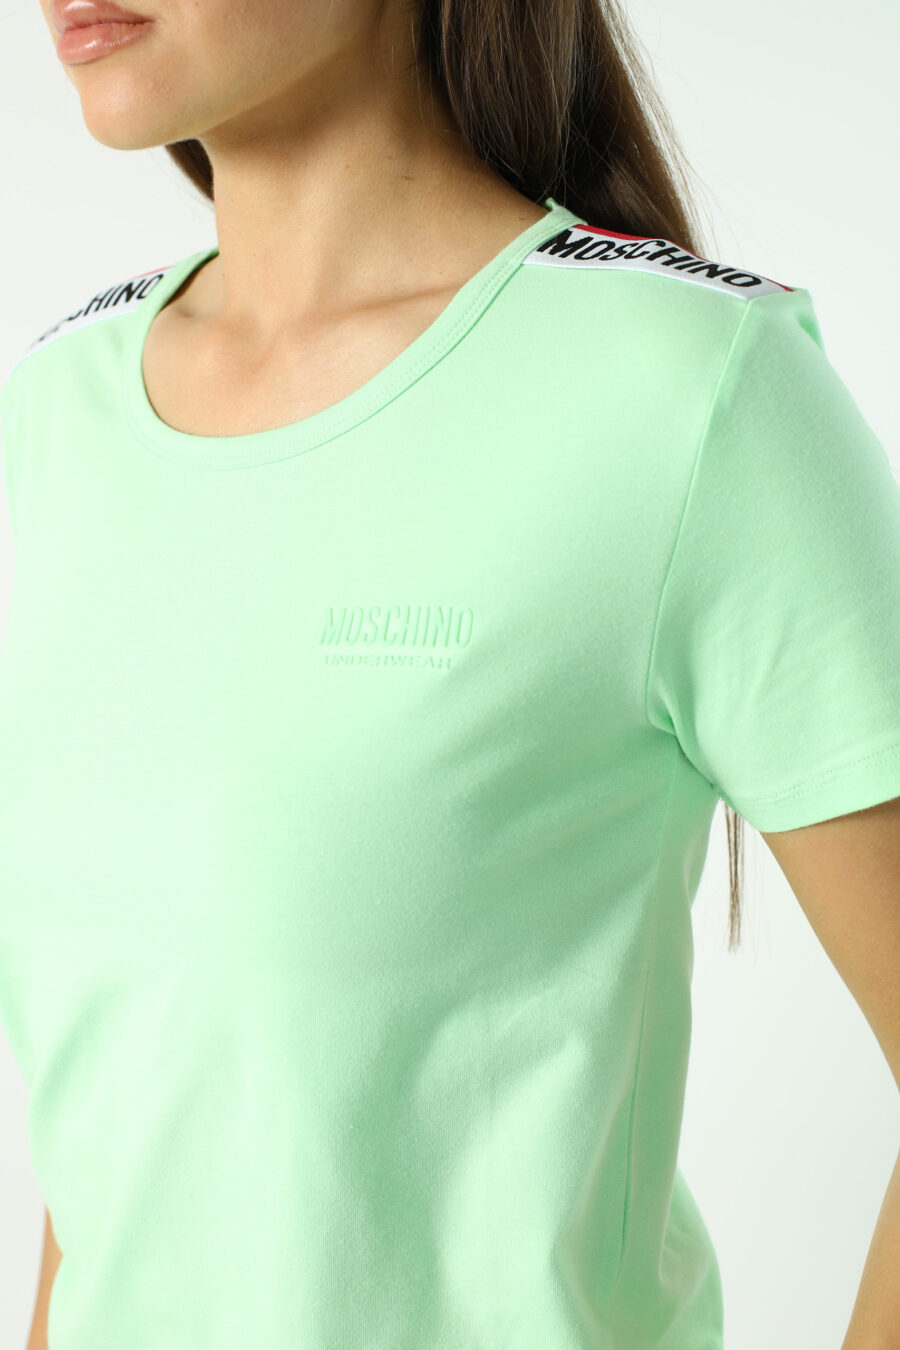 Mintgrünes, schmal geschnittenes T-Shirt mit Logoband an den Schultern - Fotos 2791